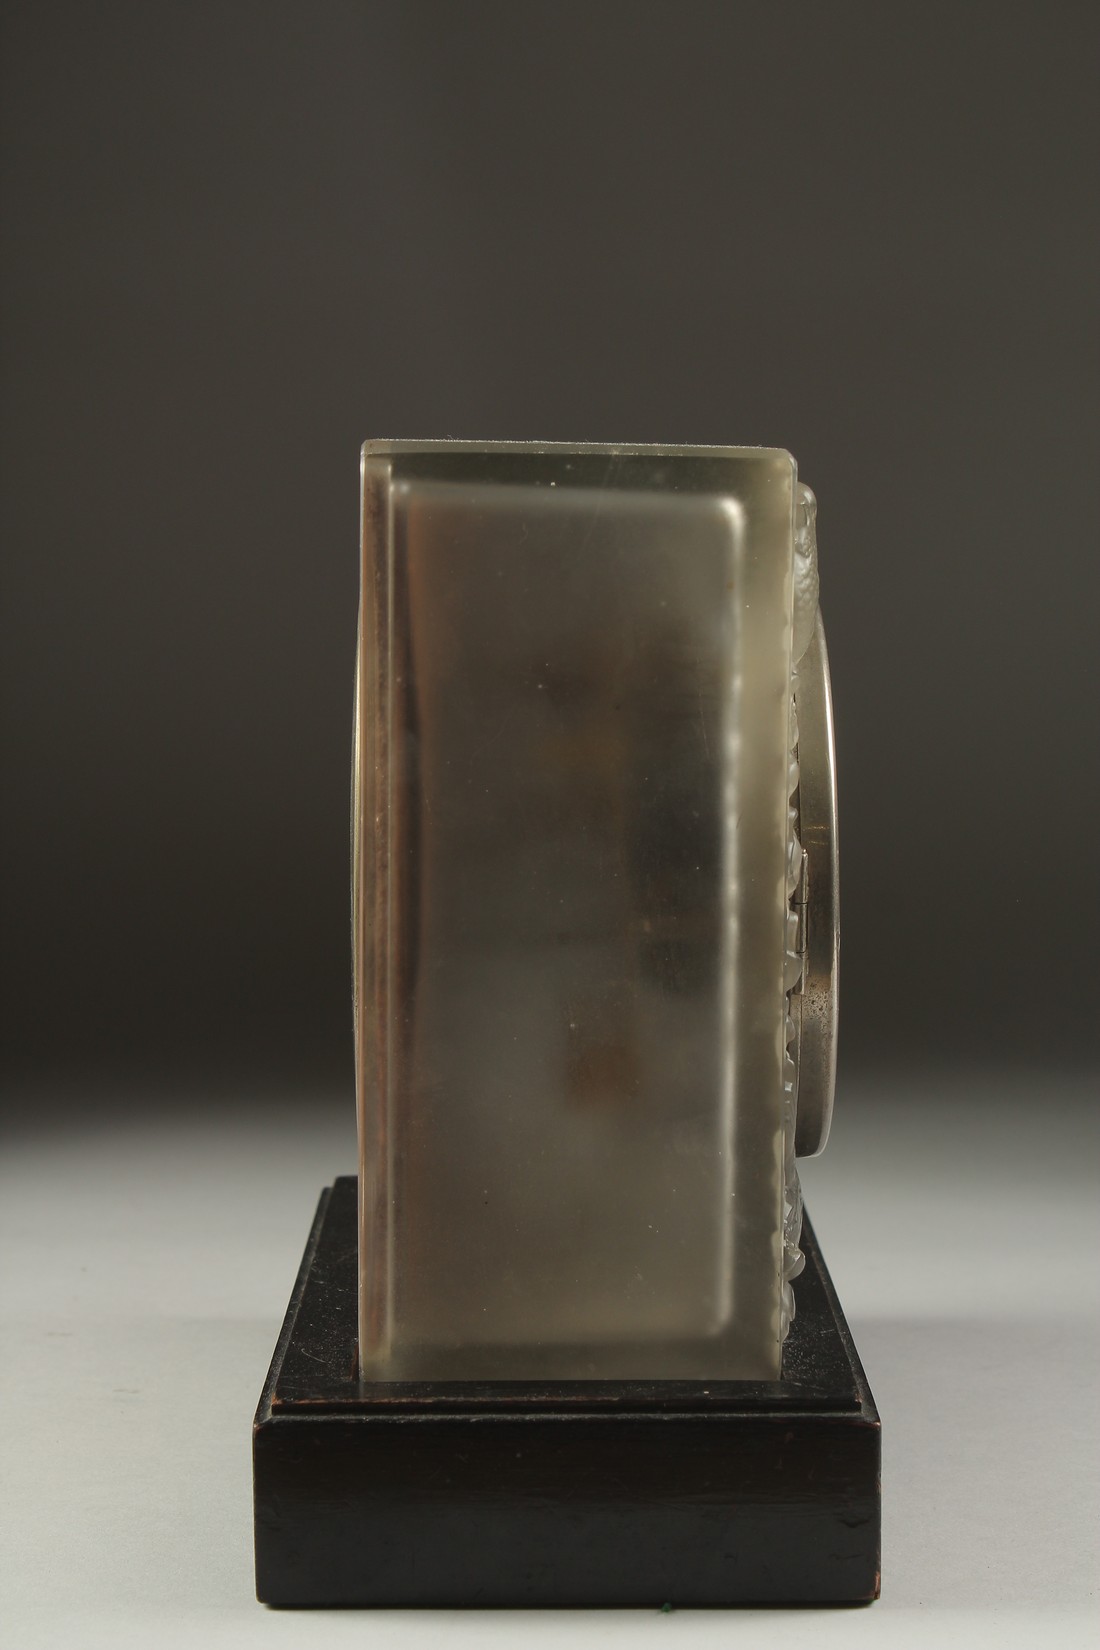 A RENE LALIQUE "QUATRE MOINEAUX DU JAPON" GLASS ART DECO DESK CLOCK with silvered pewter dial. - Bild 2 aus 7